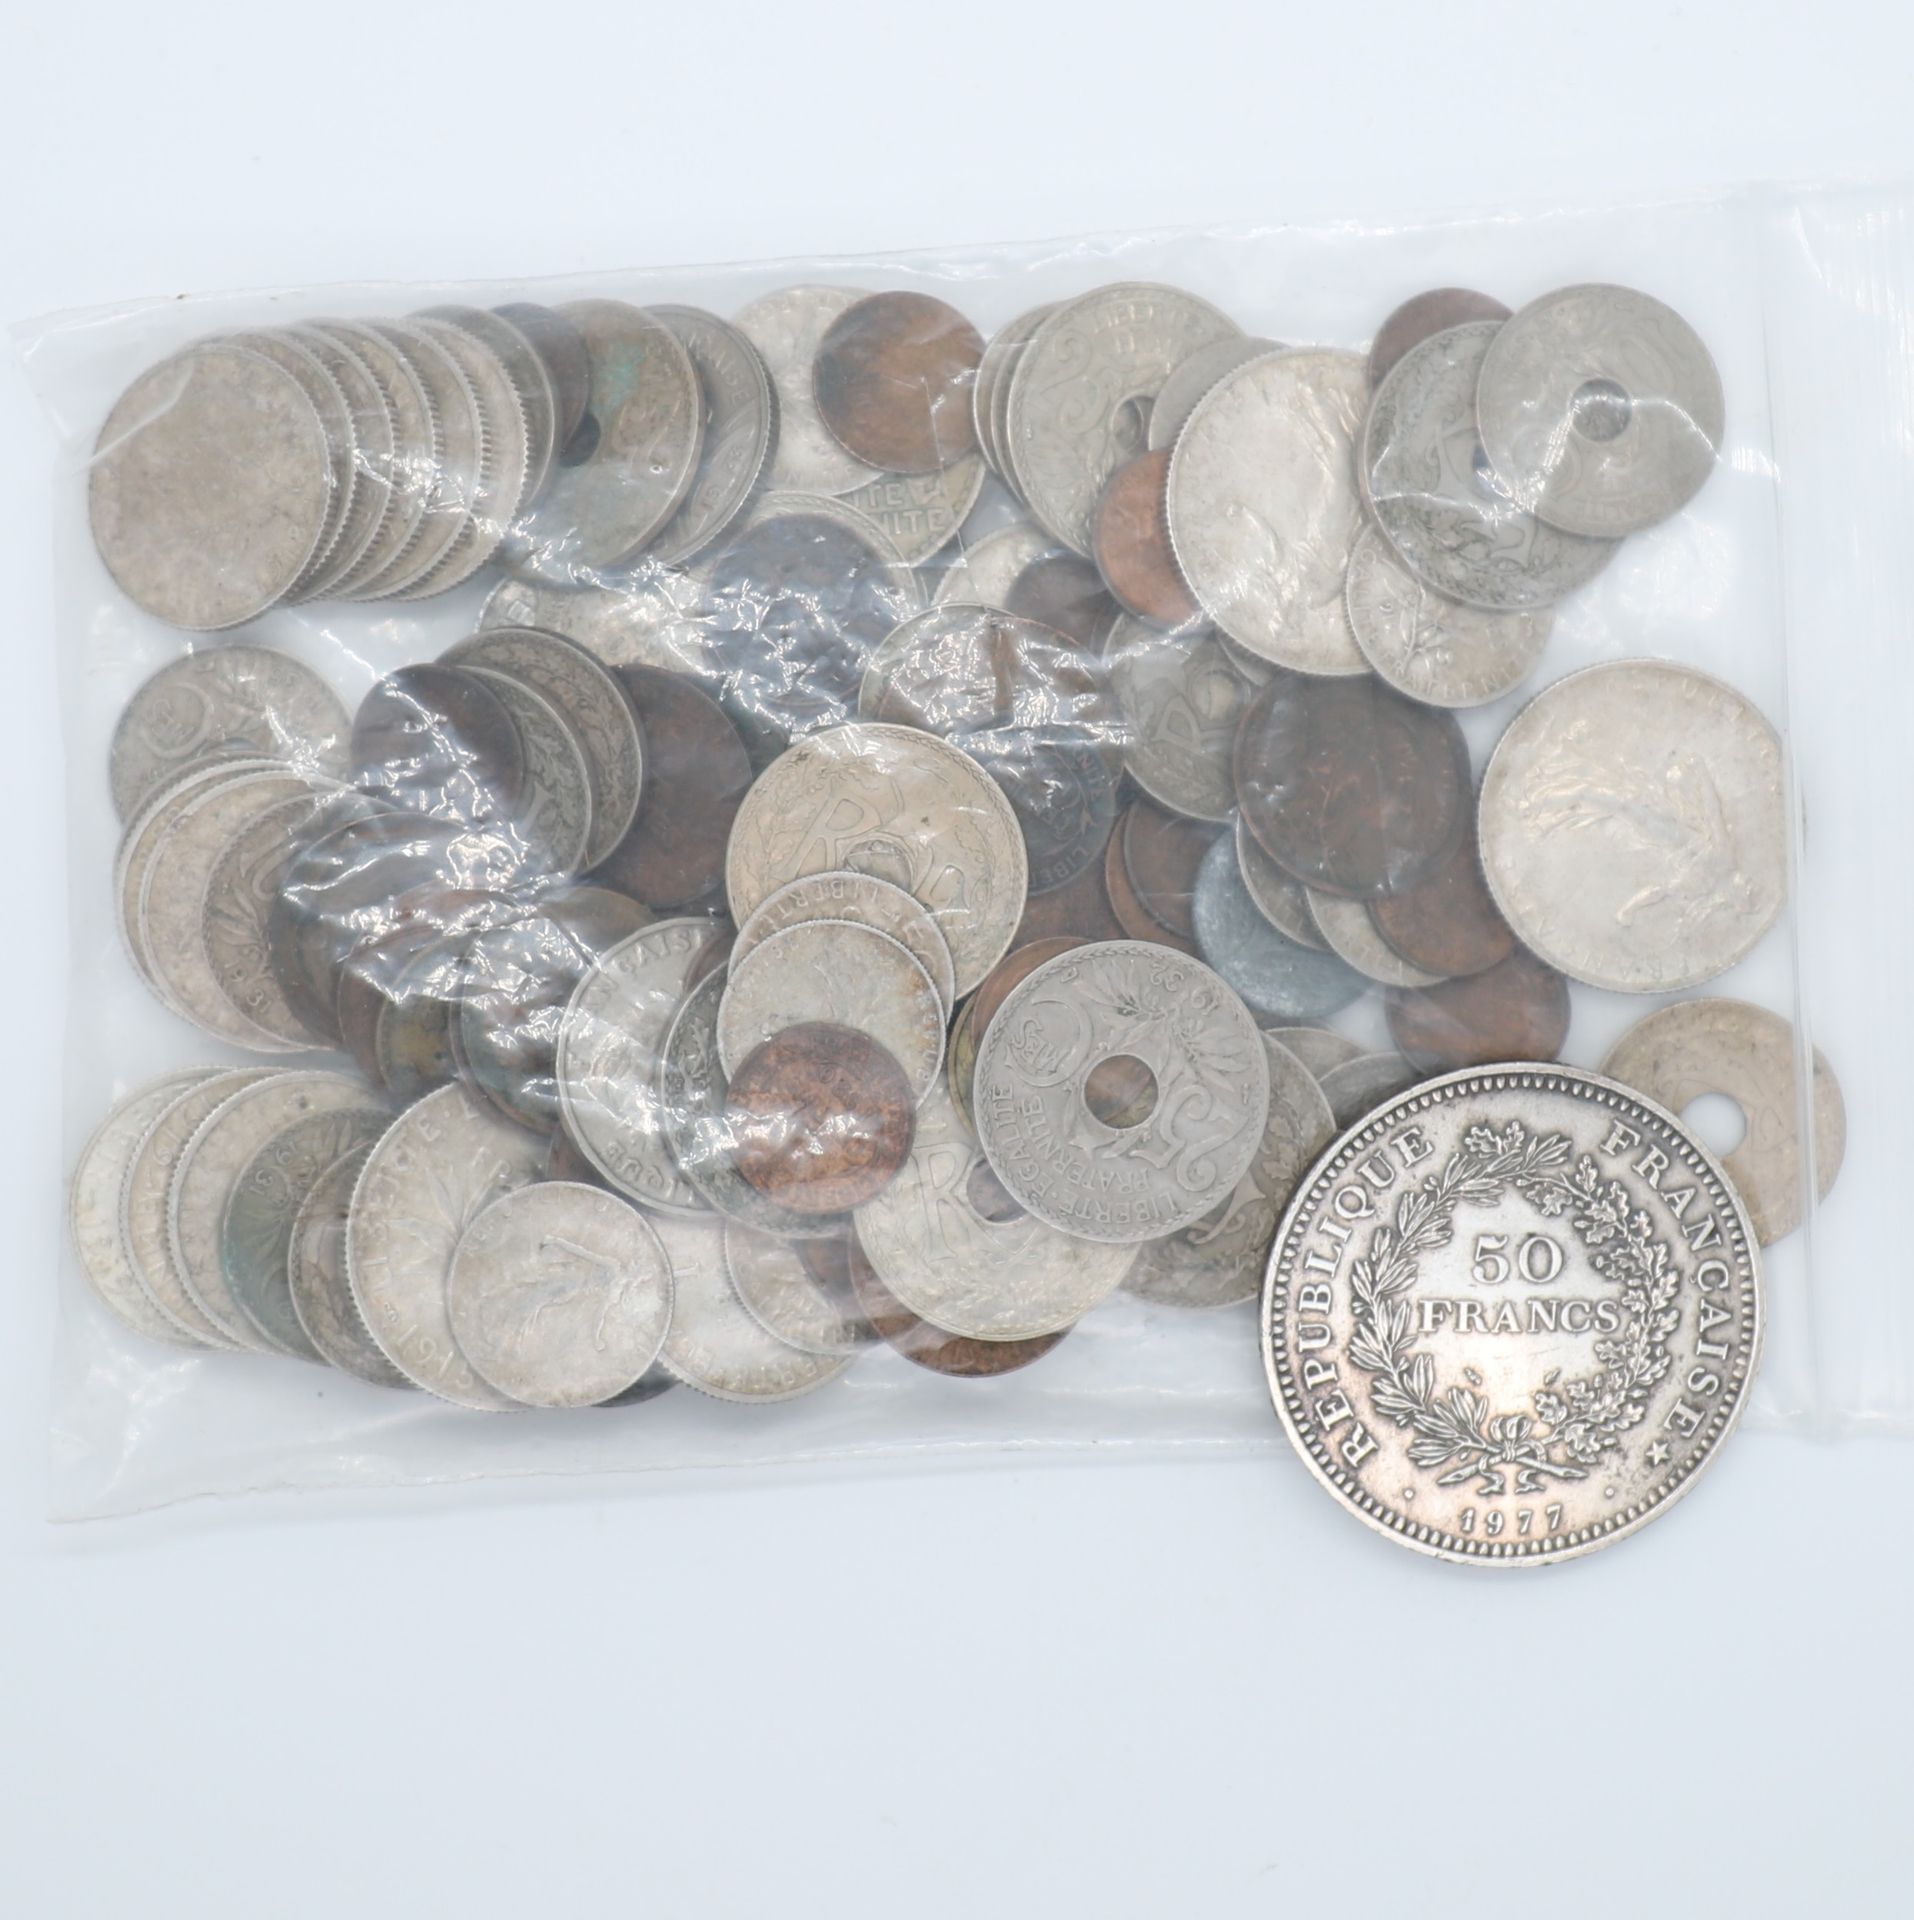 Null 一组漂亮的百元法国法郎硬币
包括1977年的50法郎海格力斯硬币